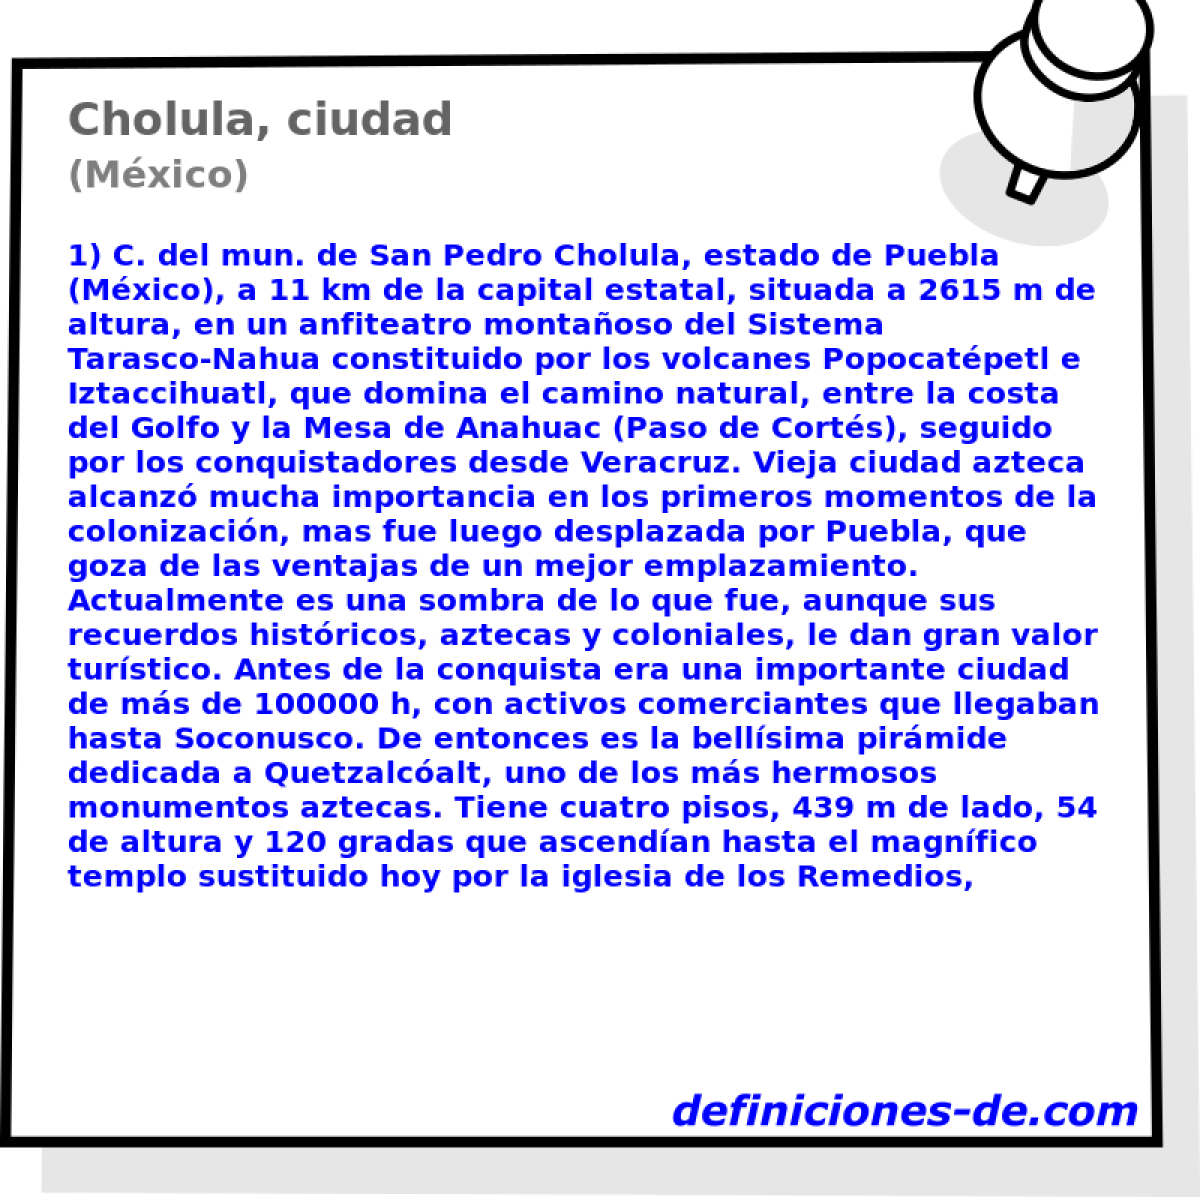 Cholula, ciudad (Mxico)